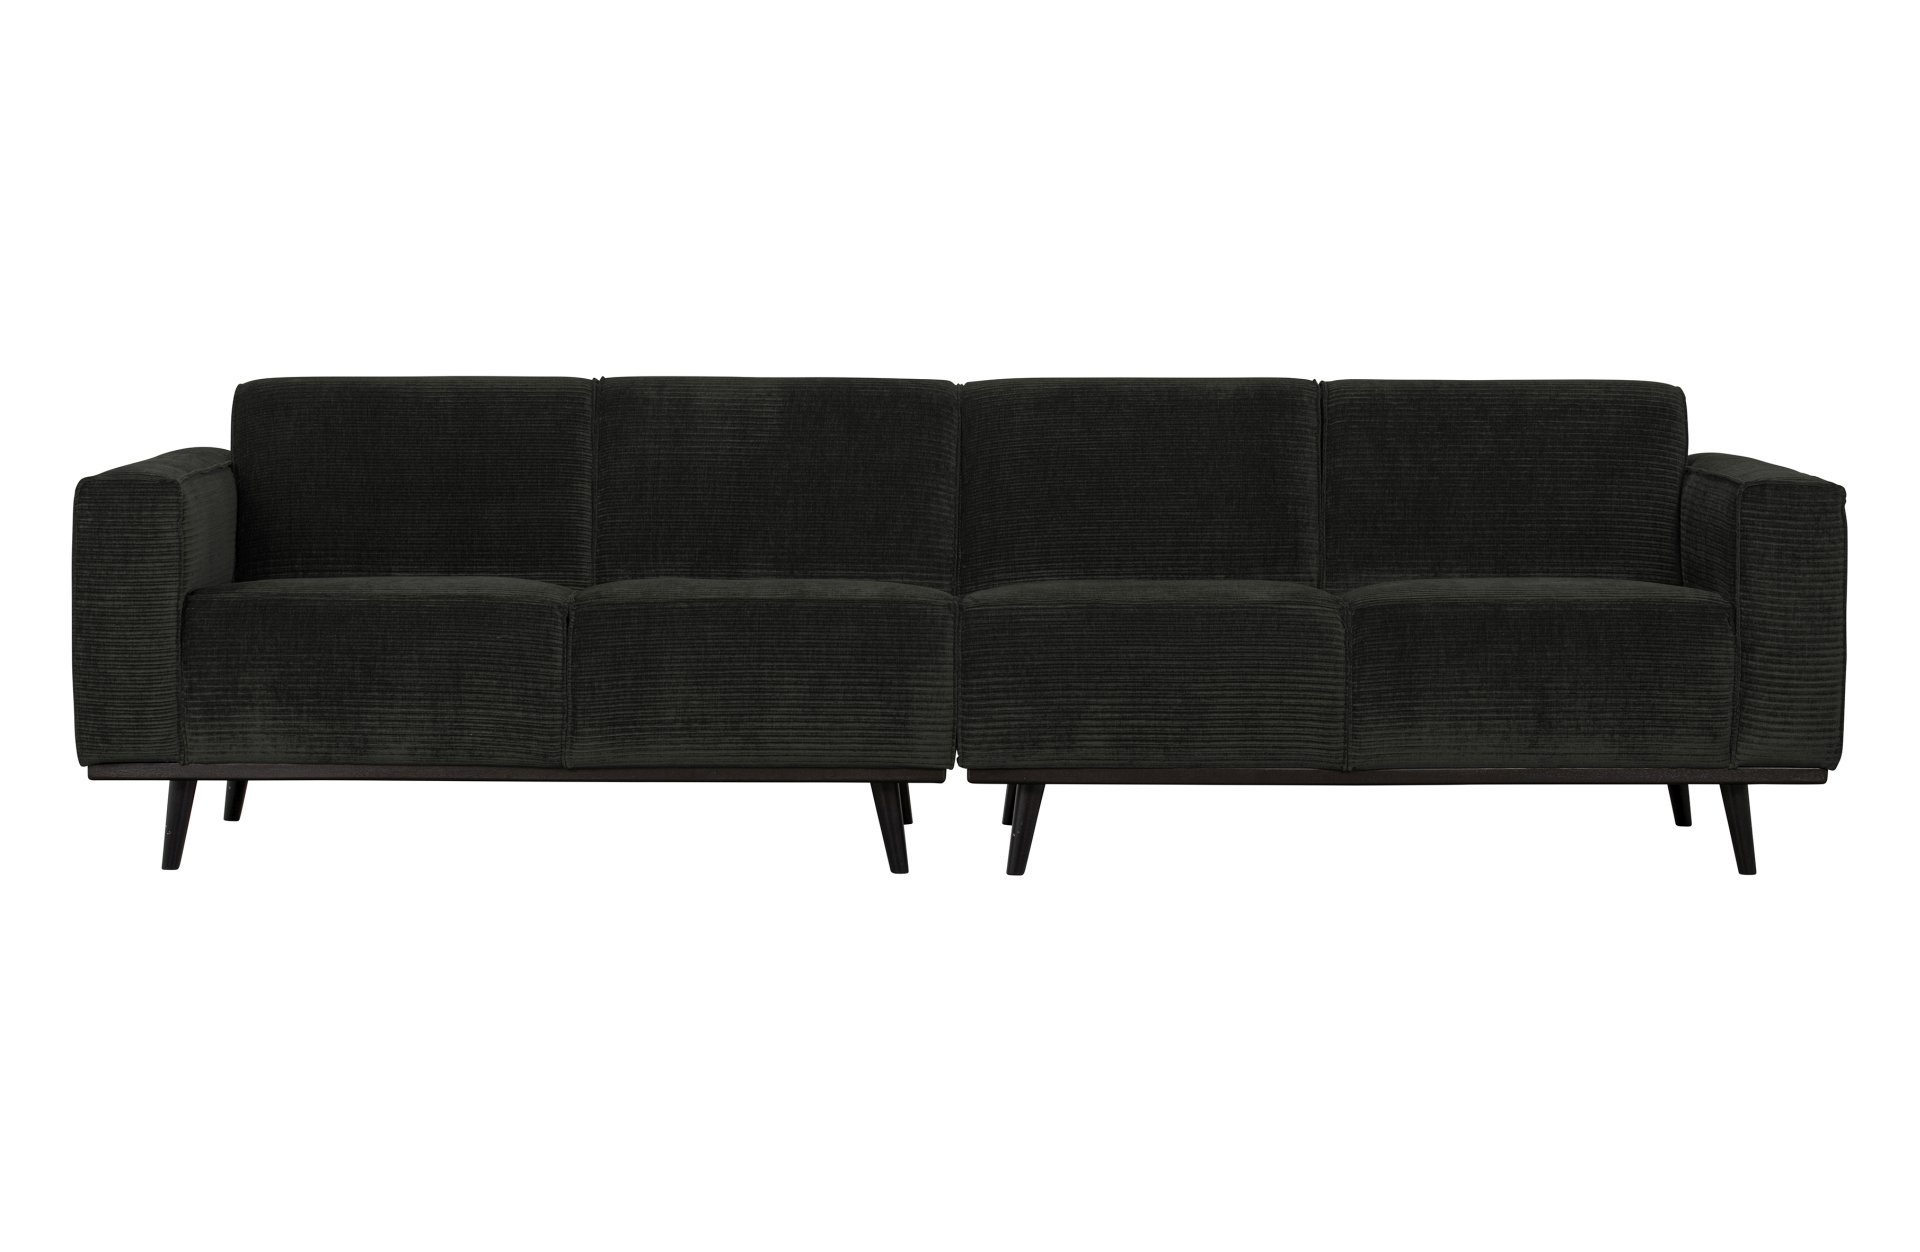 Das Sofa Statement überzeugt mit seinem modernen Design. Gefertigt wurde es aus gewebten Jacquard, welches einen Graphit Farbton besitzen. Das Gestell ist aus Birkenholz und hat eine schwarze Farbe. Das Sofa hat eine Breite von 280 cm.